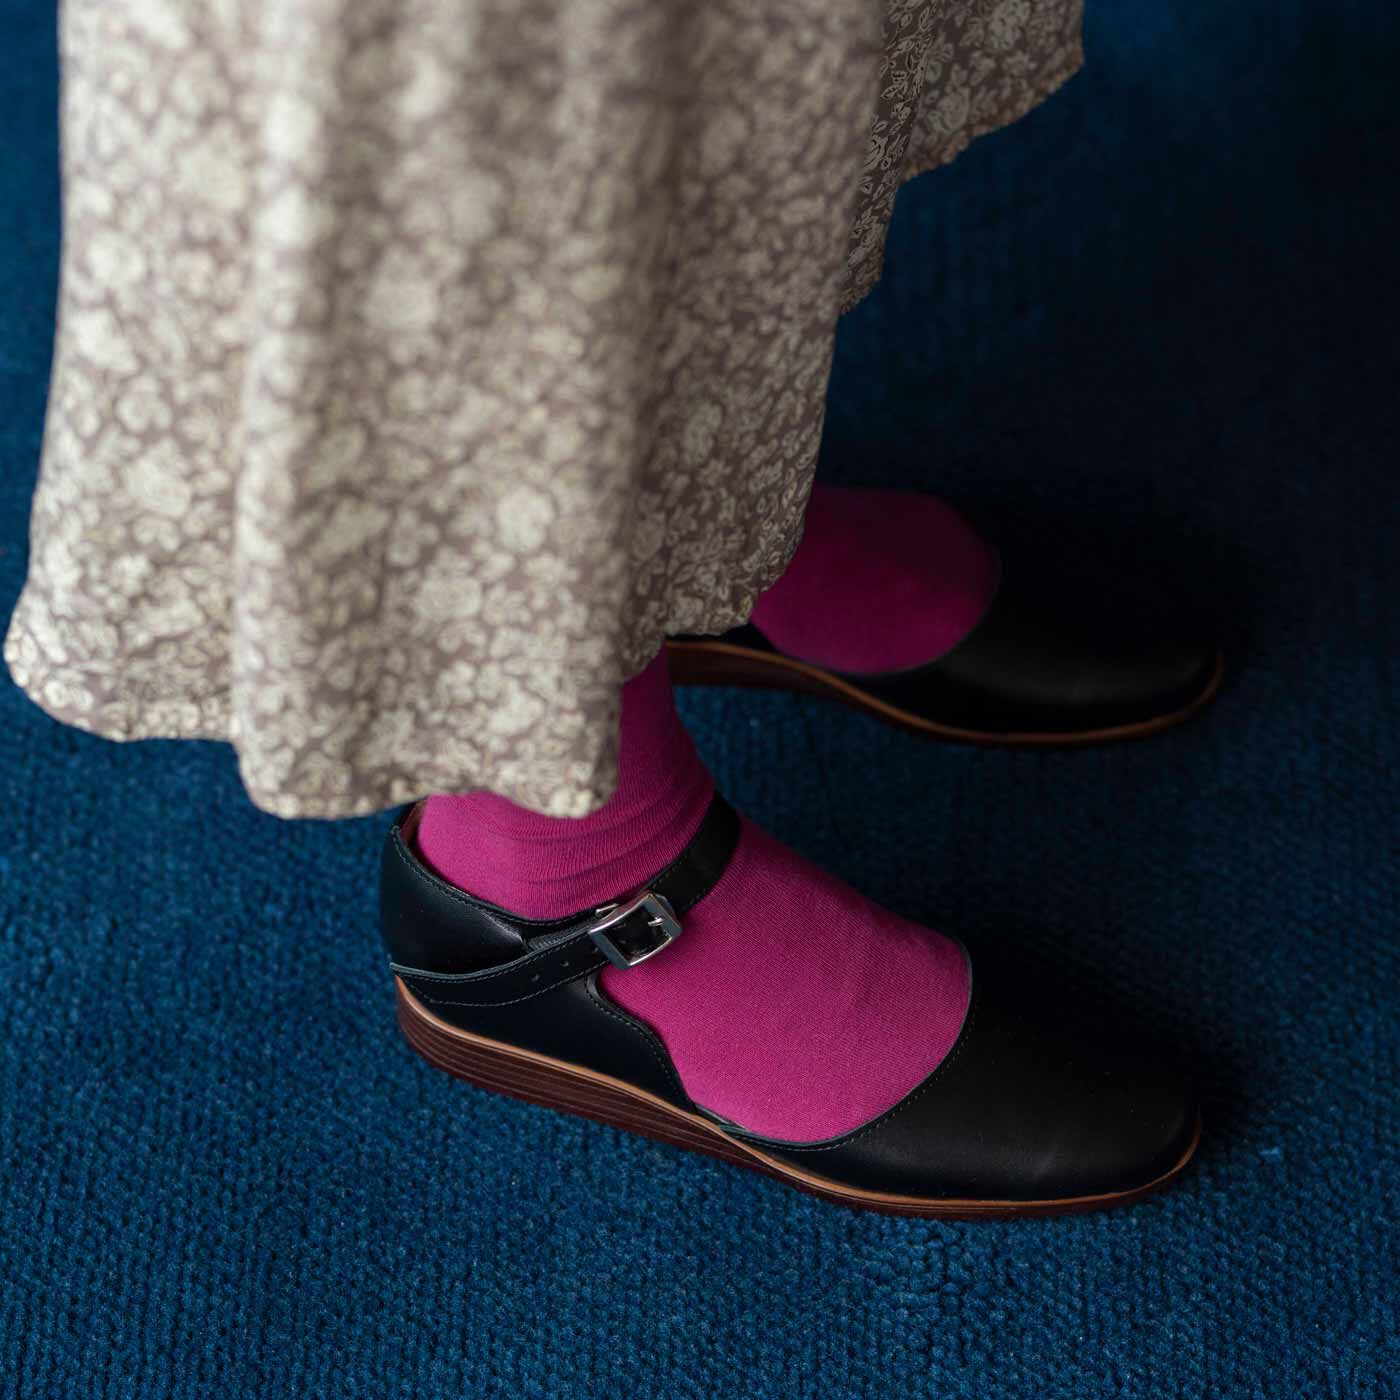 ＆Stories|長田靴職人が叶えた 本革ストラップトウシューズ〈ブラックキャット〉[本革 靴：日本製]|細身に見えて、実は幅広・甲高の足もすっぽり包み、フィットします。